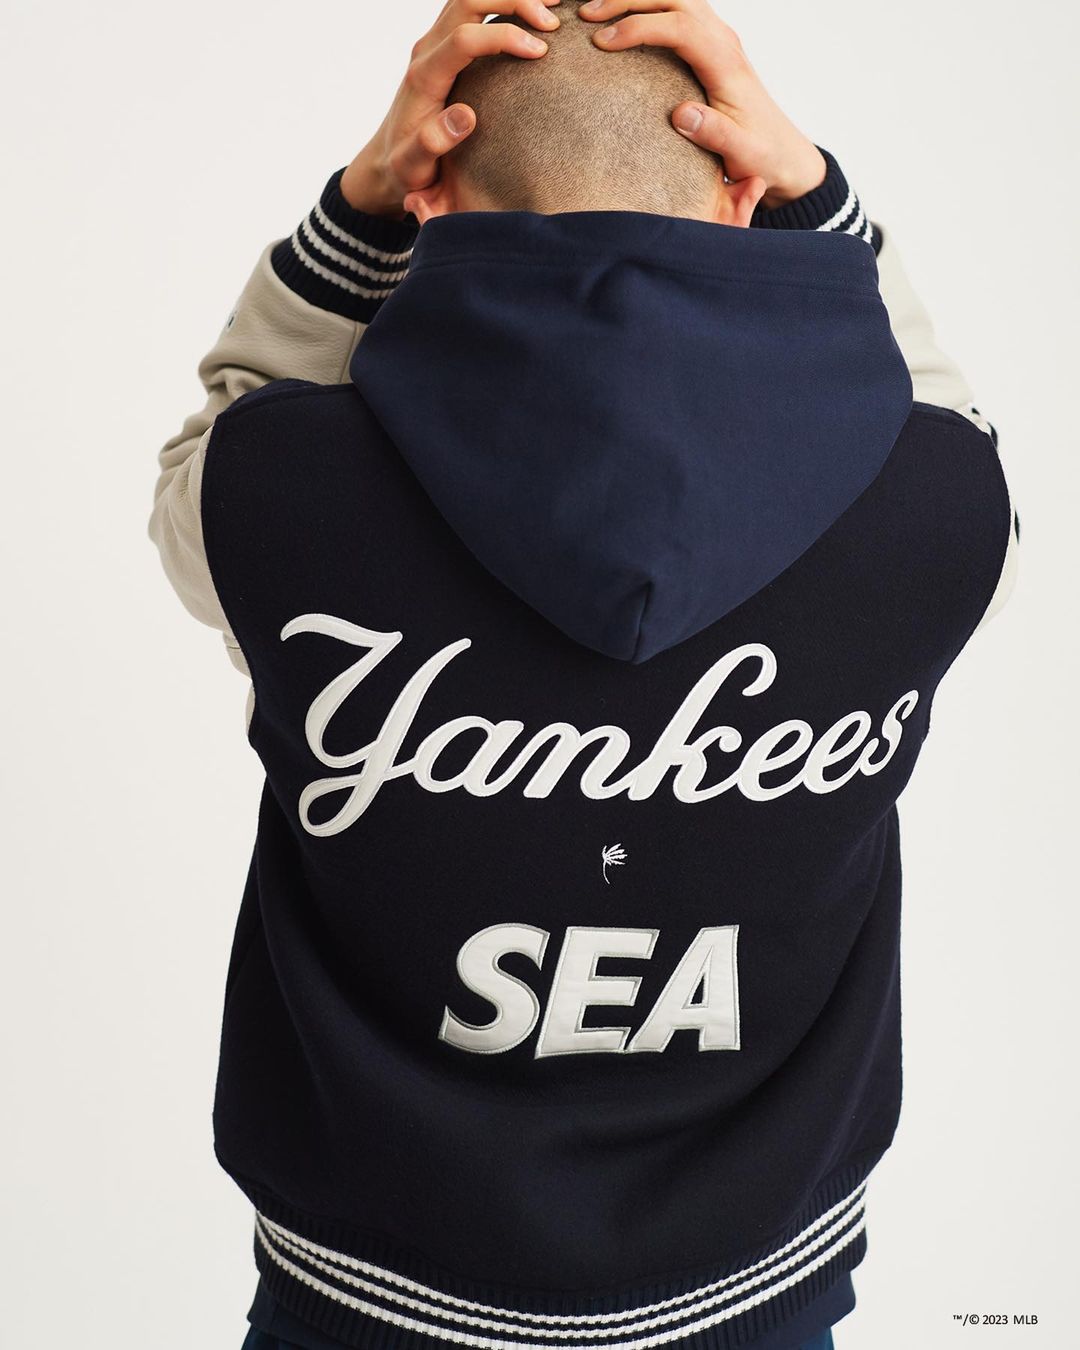 【7/25 発売】WIND AND SEA x MLB “New York Yankees” (ウィンダンシー エムエルビー “ニューヨーク・ヤンキース”)